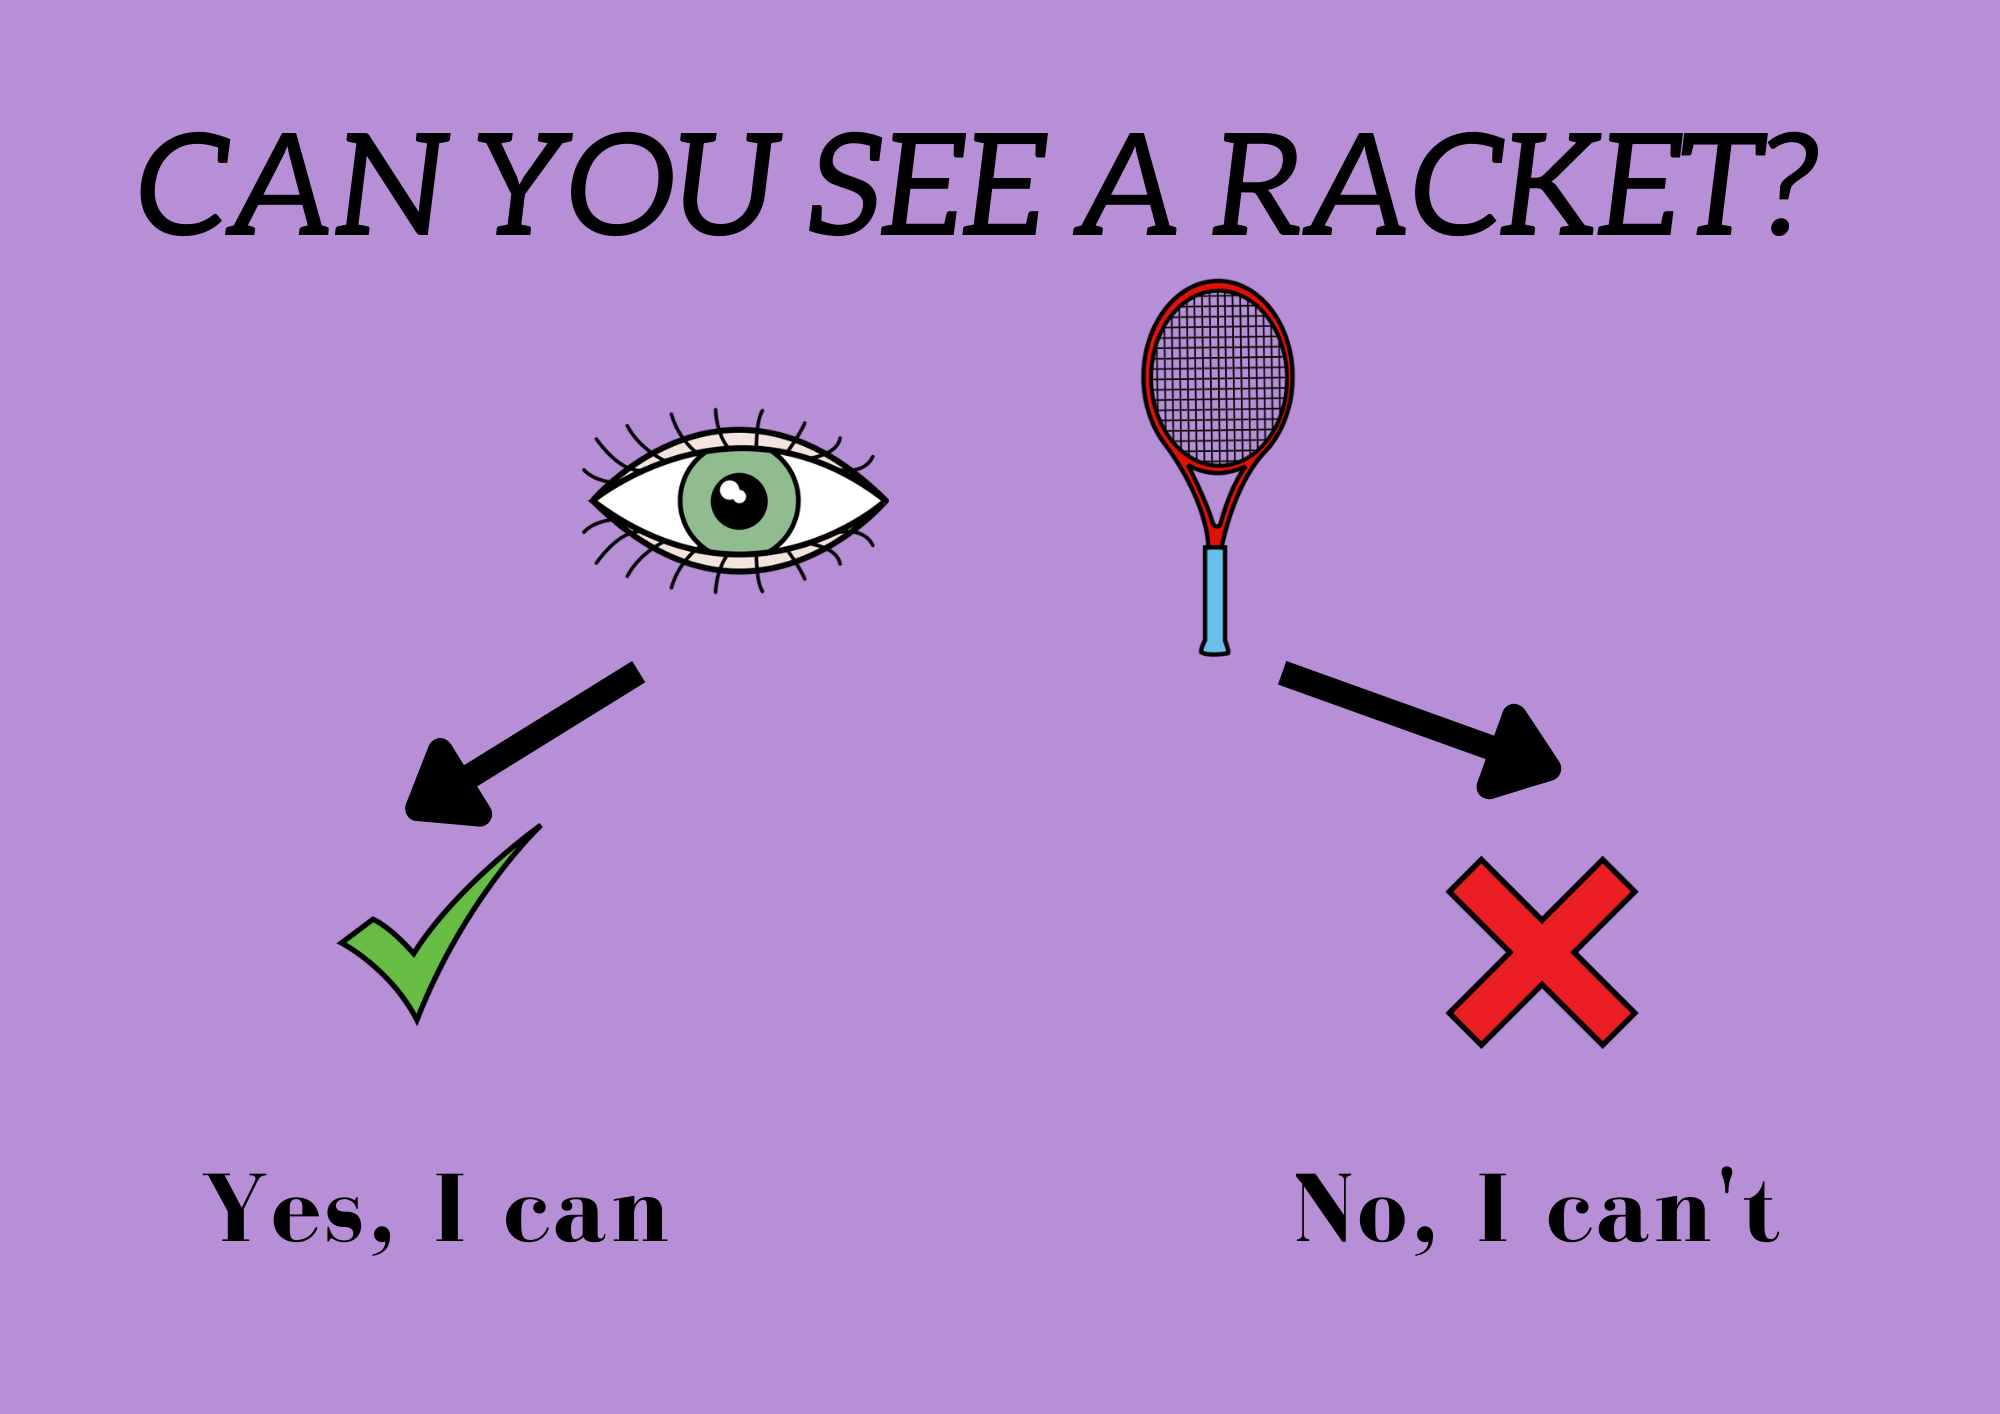 La imagen muestra la estructura interrogativa ‘Can you see a racket?’ acompañada de la imagen de un ojo, con las dos opciones de respuesta ‘Yes I, can” acompañada de un signo positivo verde, y “No, I can’t” acompañada con un signo negativo rojo.